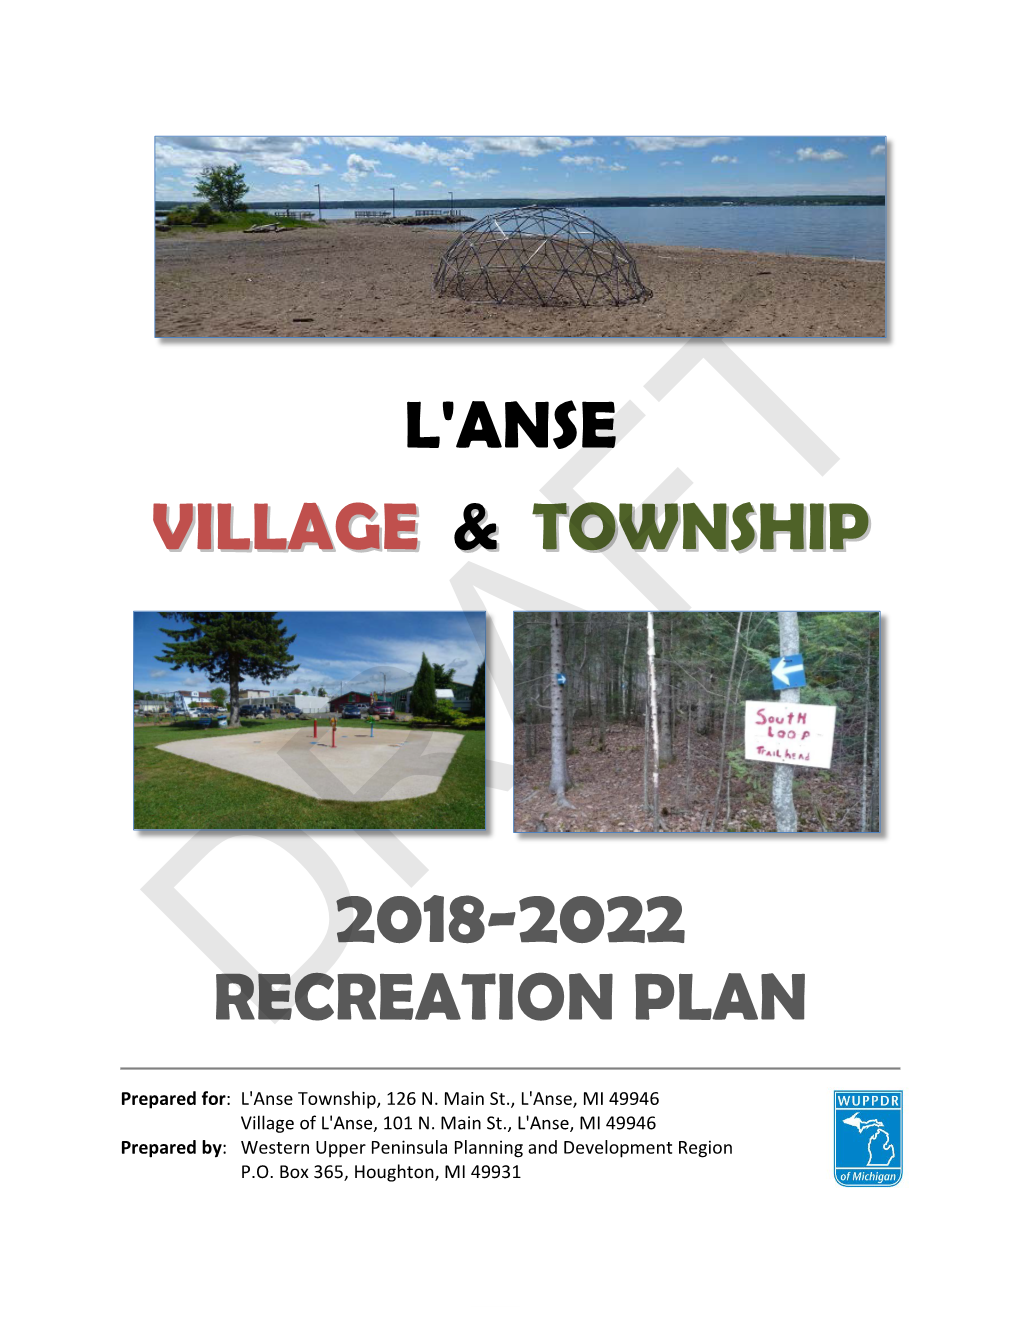 L'anse Village & Township Recreation Plan